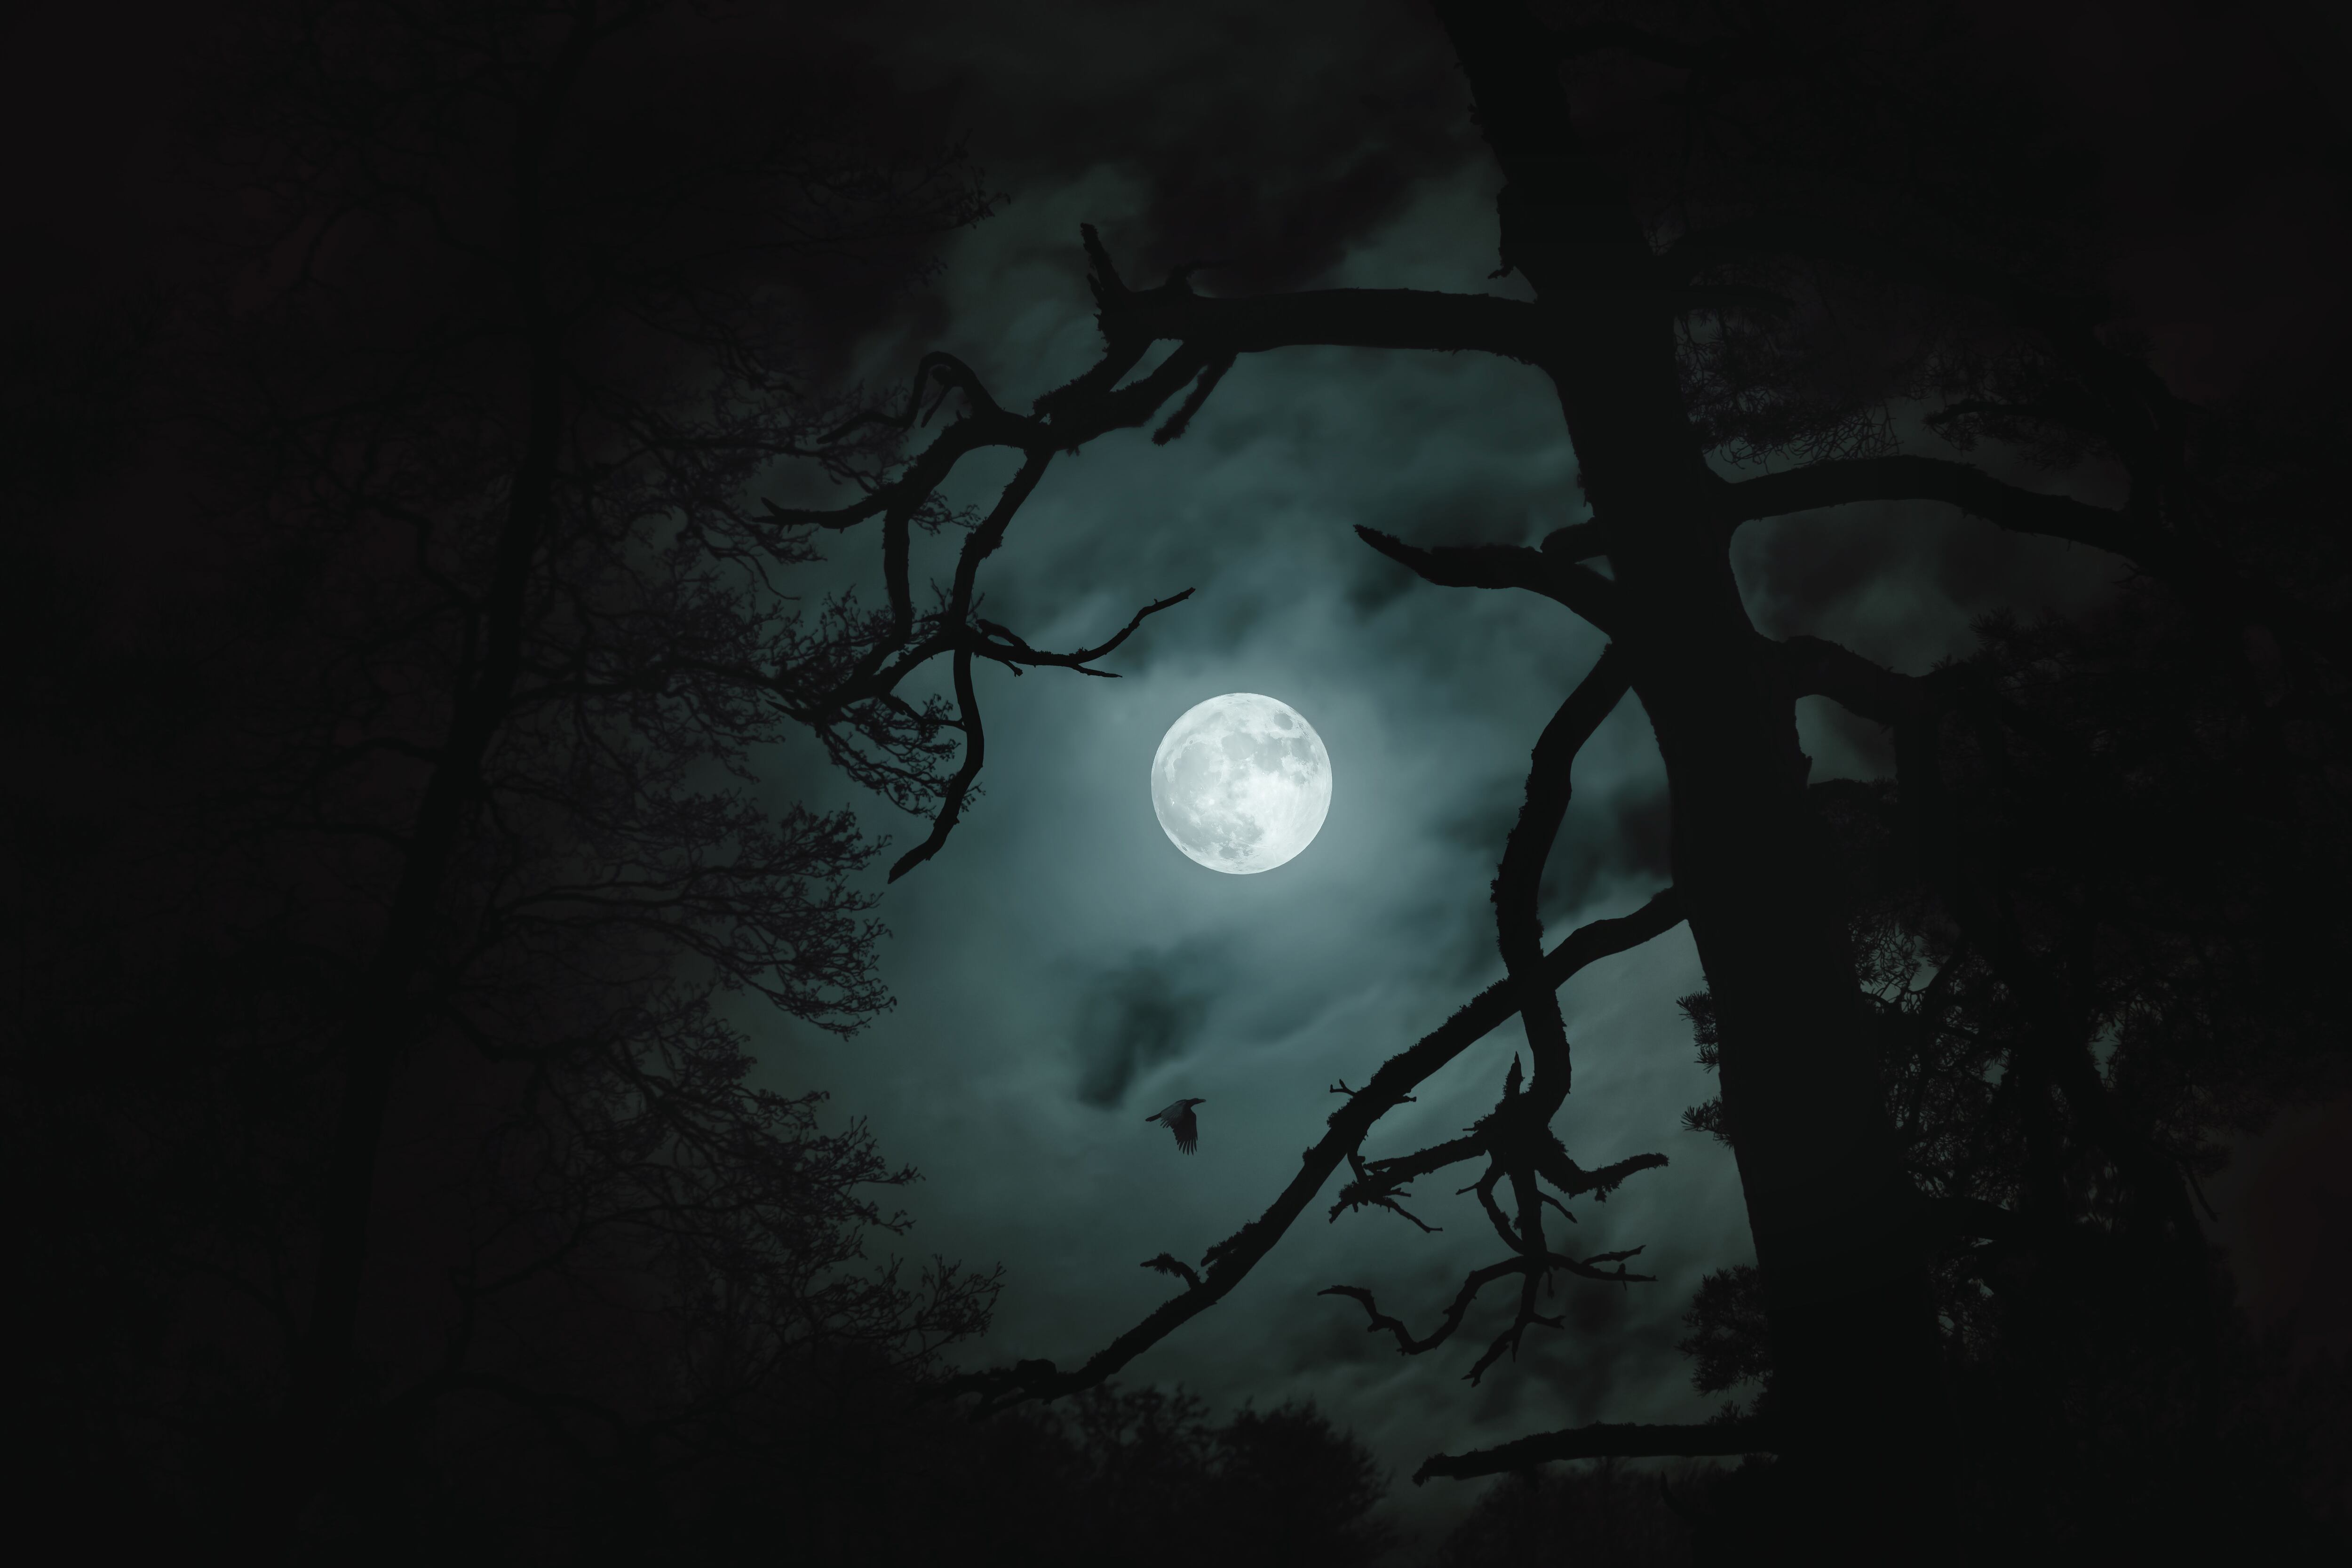 Cómo utilizar la luz de luna llena en fotografía nocturna